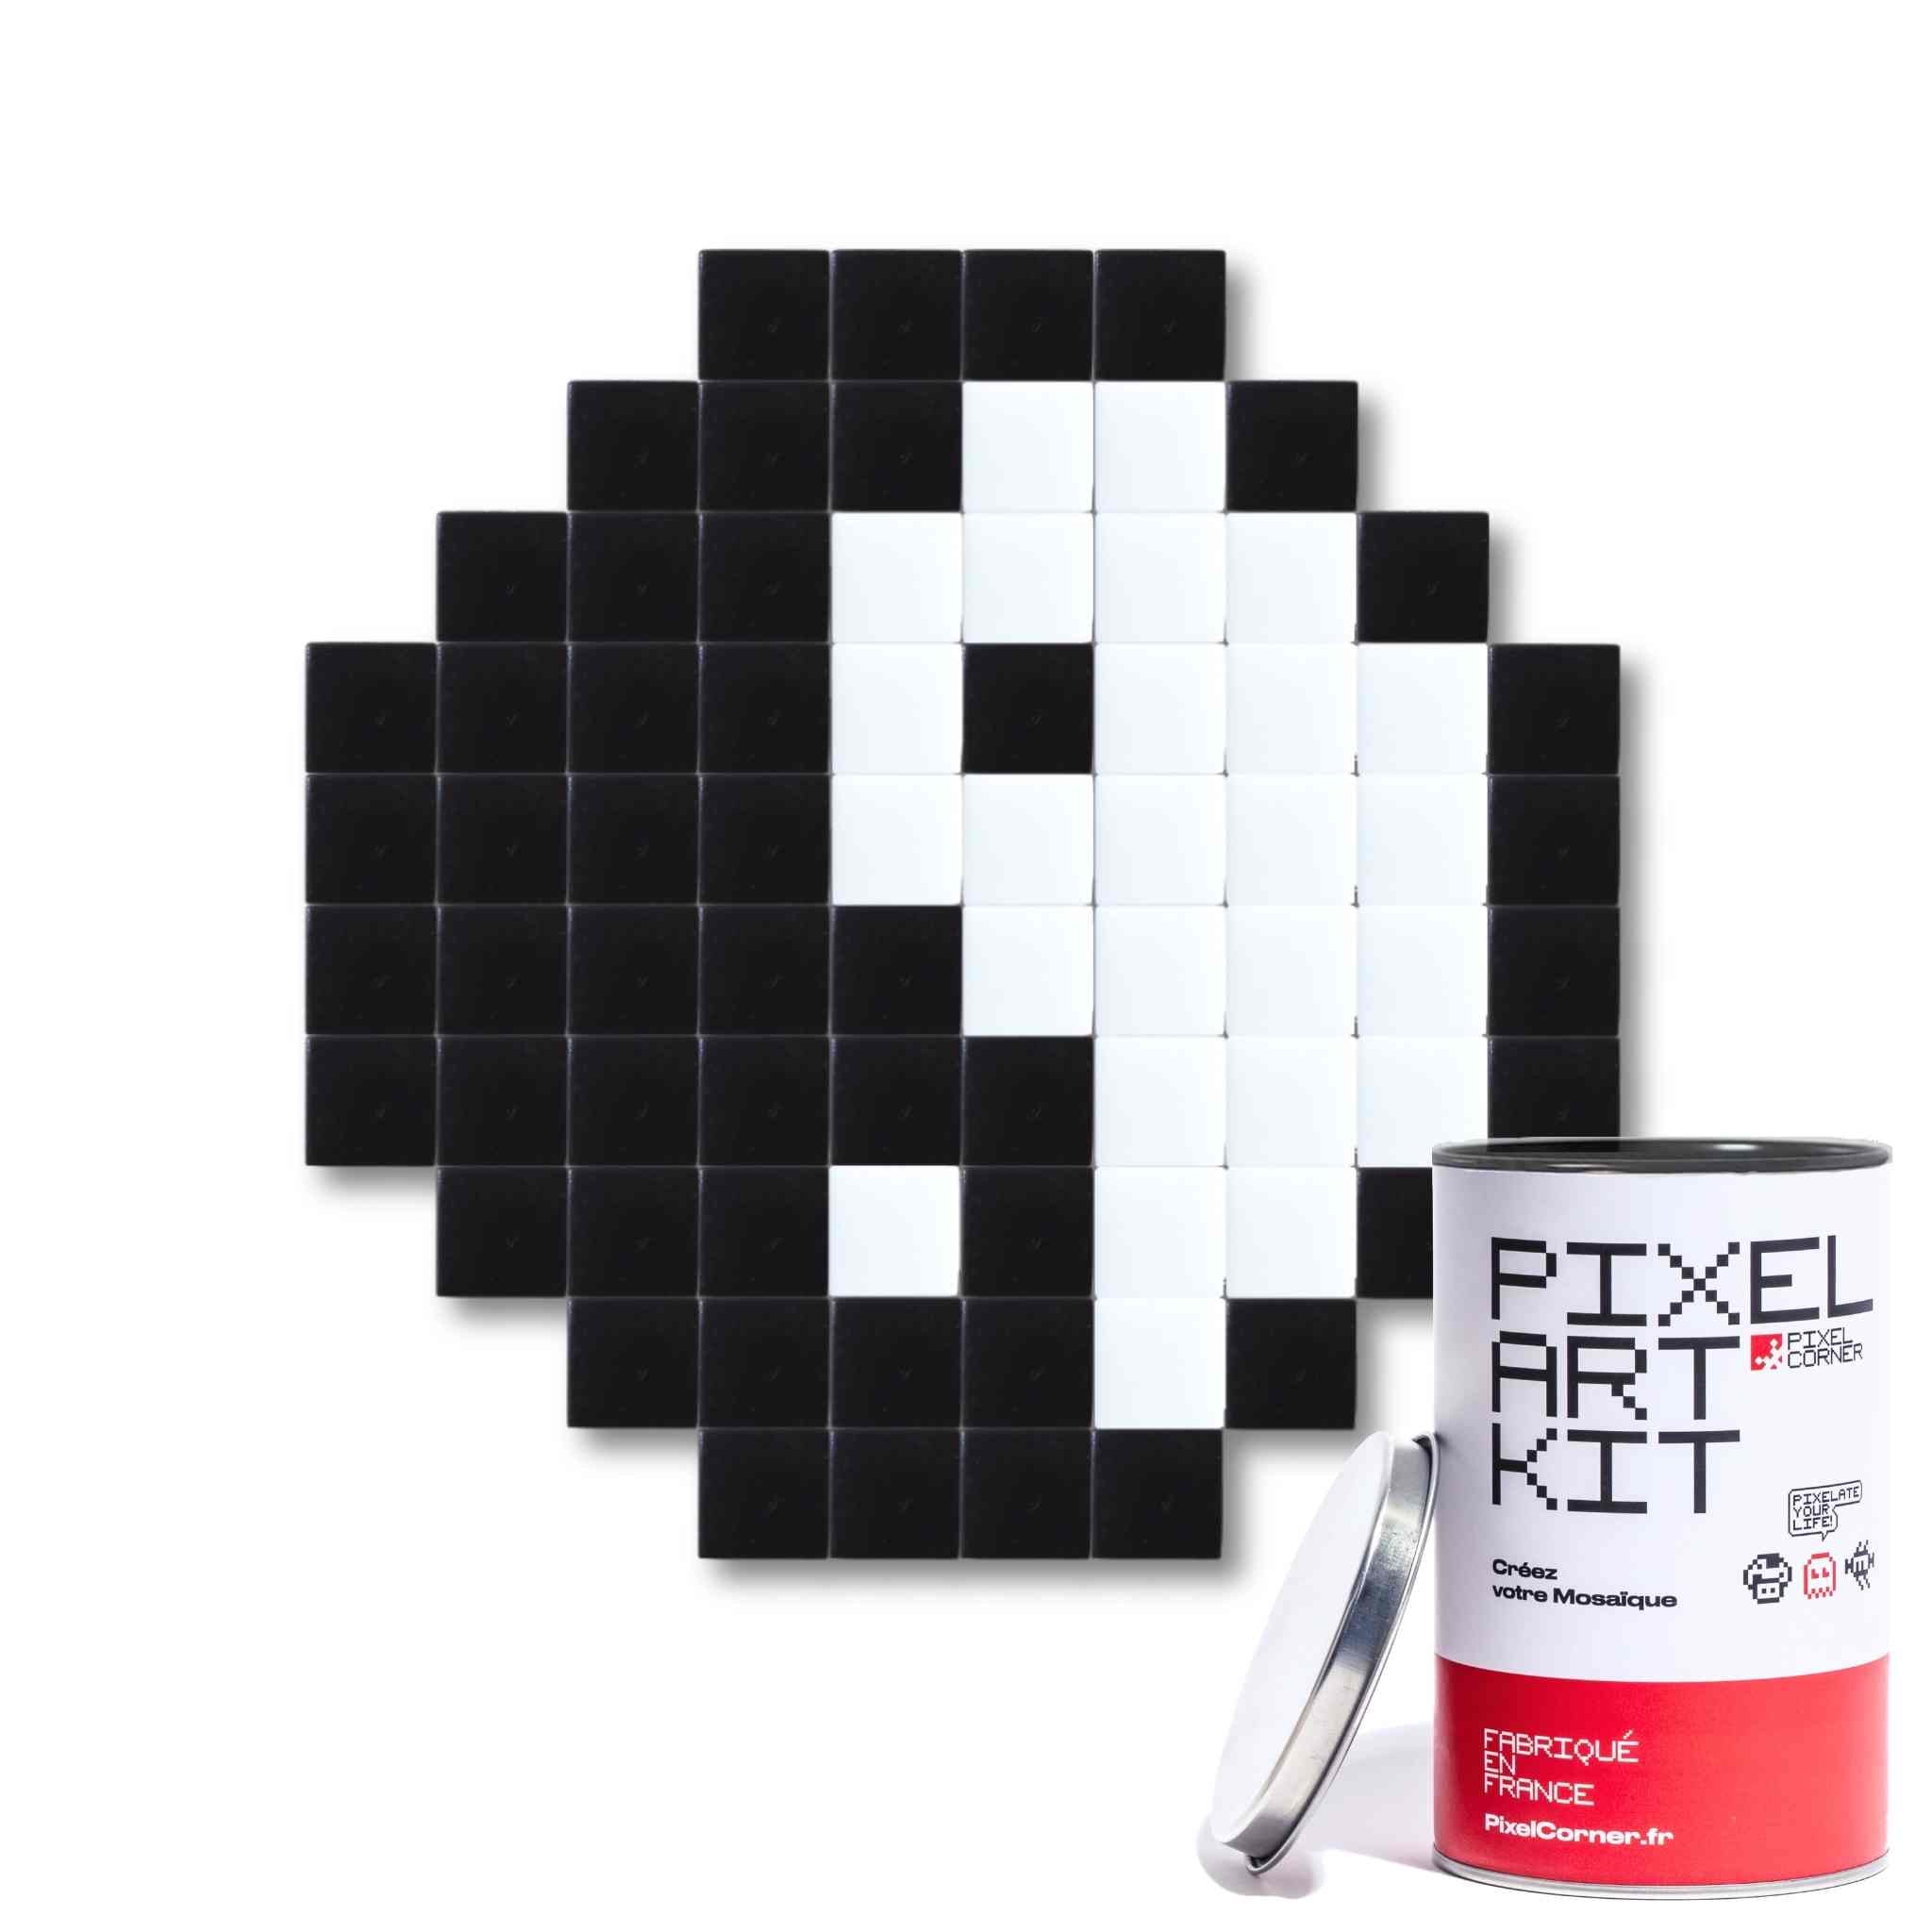 Pixel Art Kit "Yang Ying" par Pixel Corner - Kits de loisirs créatifs